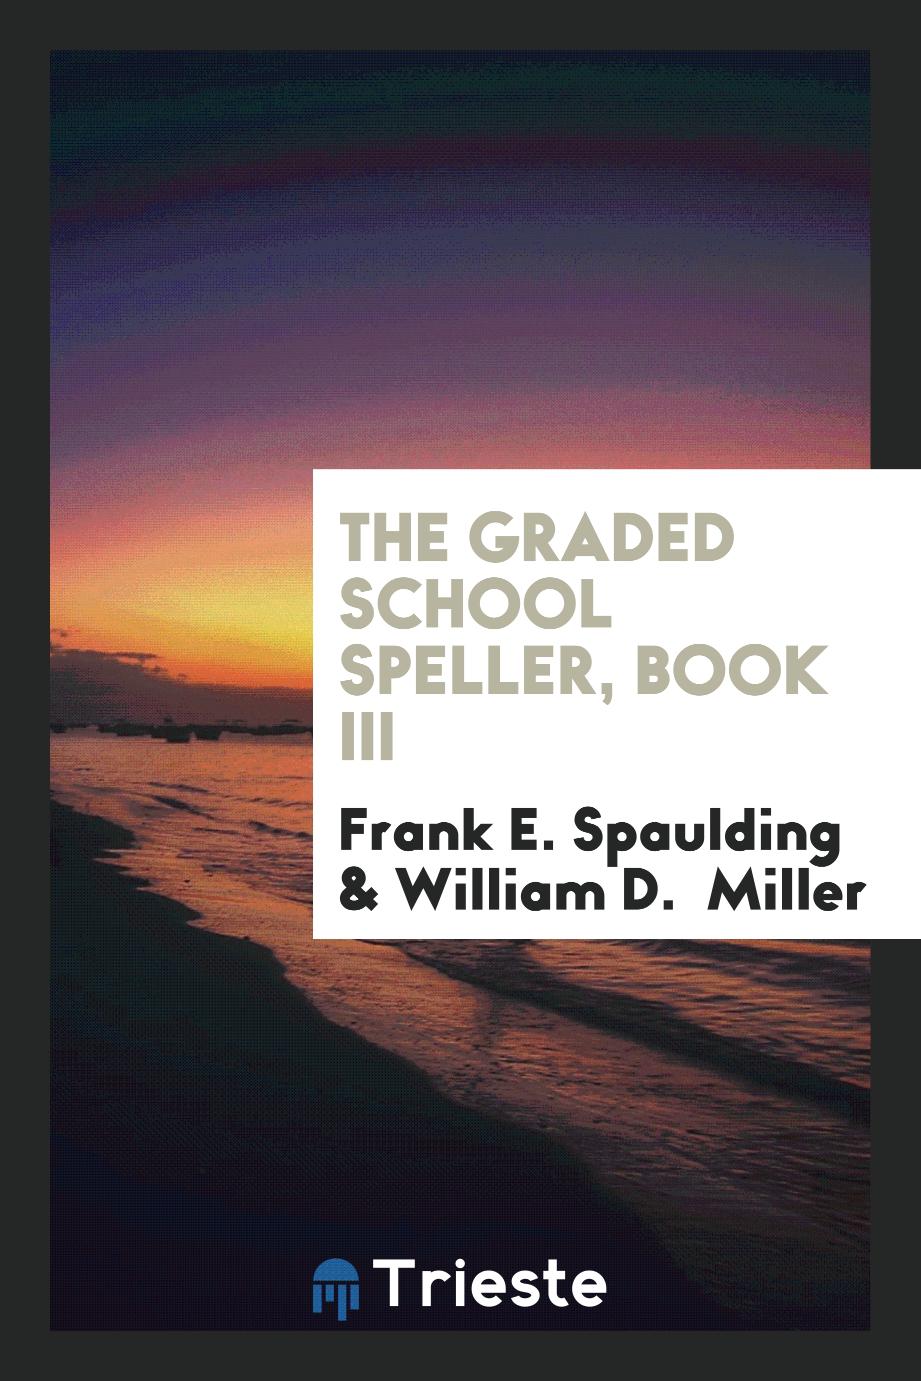 The Graded School Speller, book III